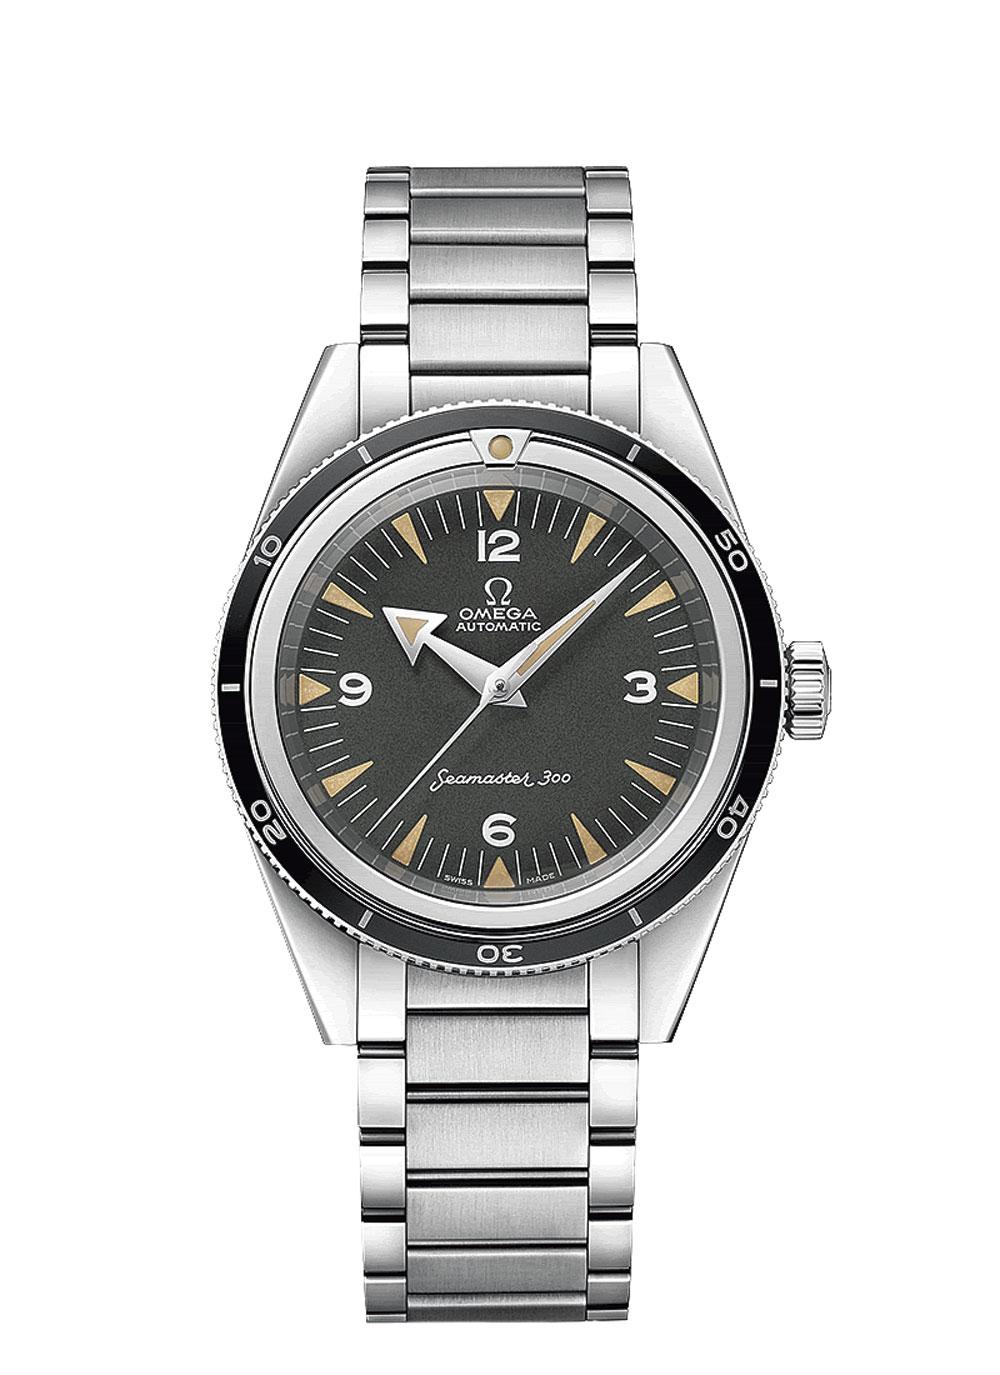 Une montre Seamaster 300, 39 mm, boîtier et bracelet en acier inoxydable, Omega, 6600 euros